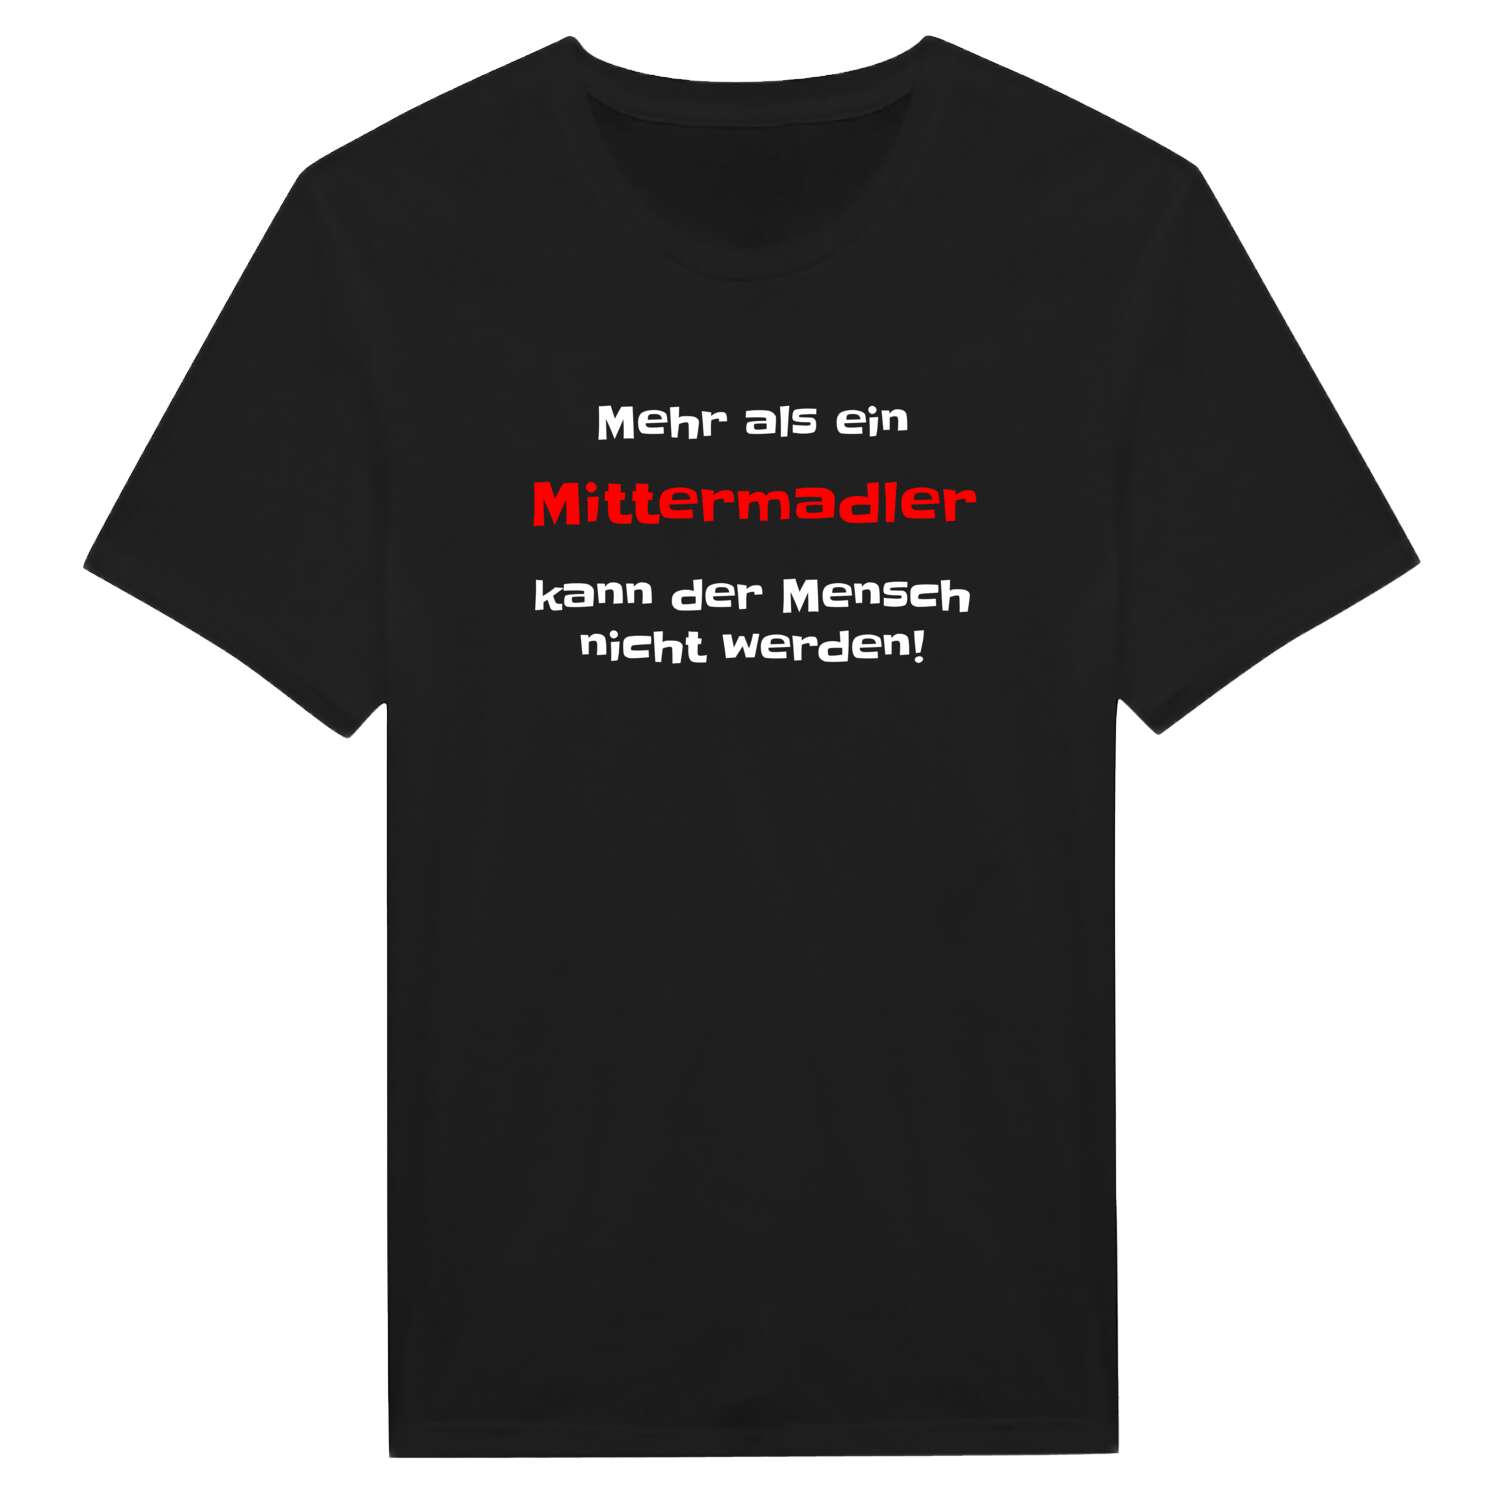 Mittermadl T-Shirt »Mehr als ein«